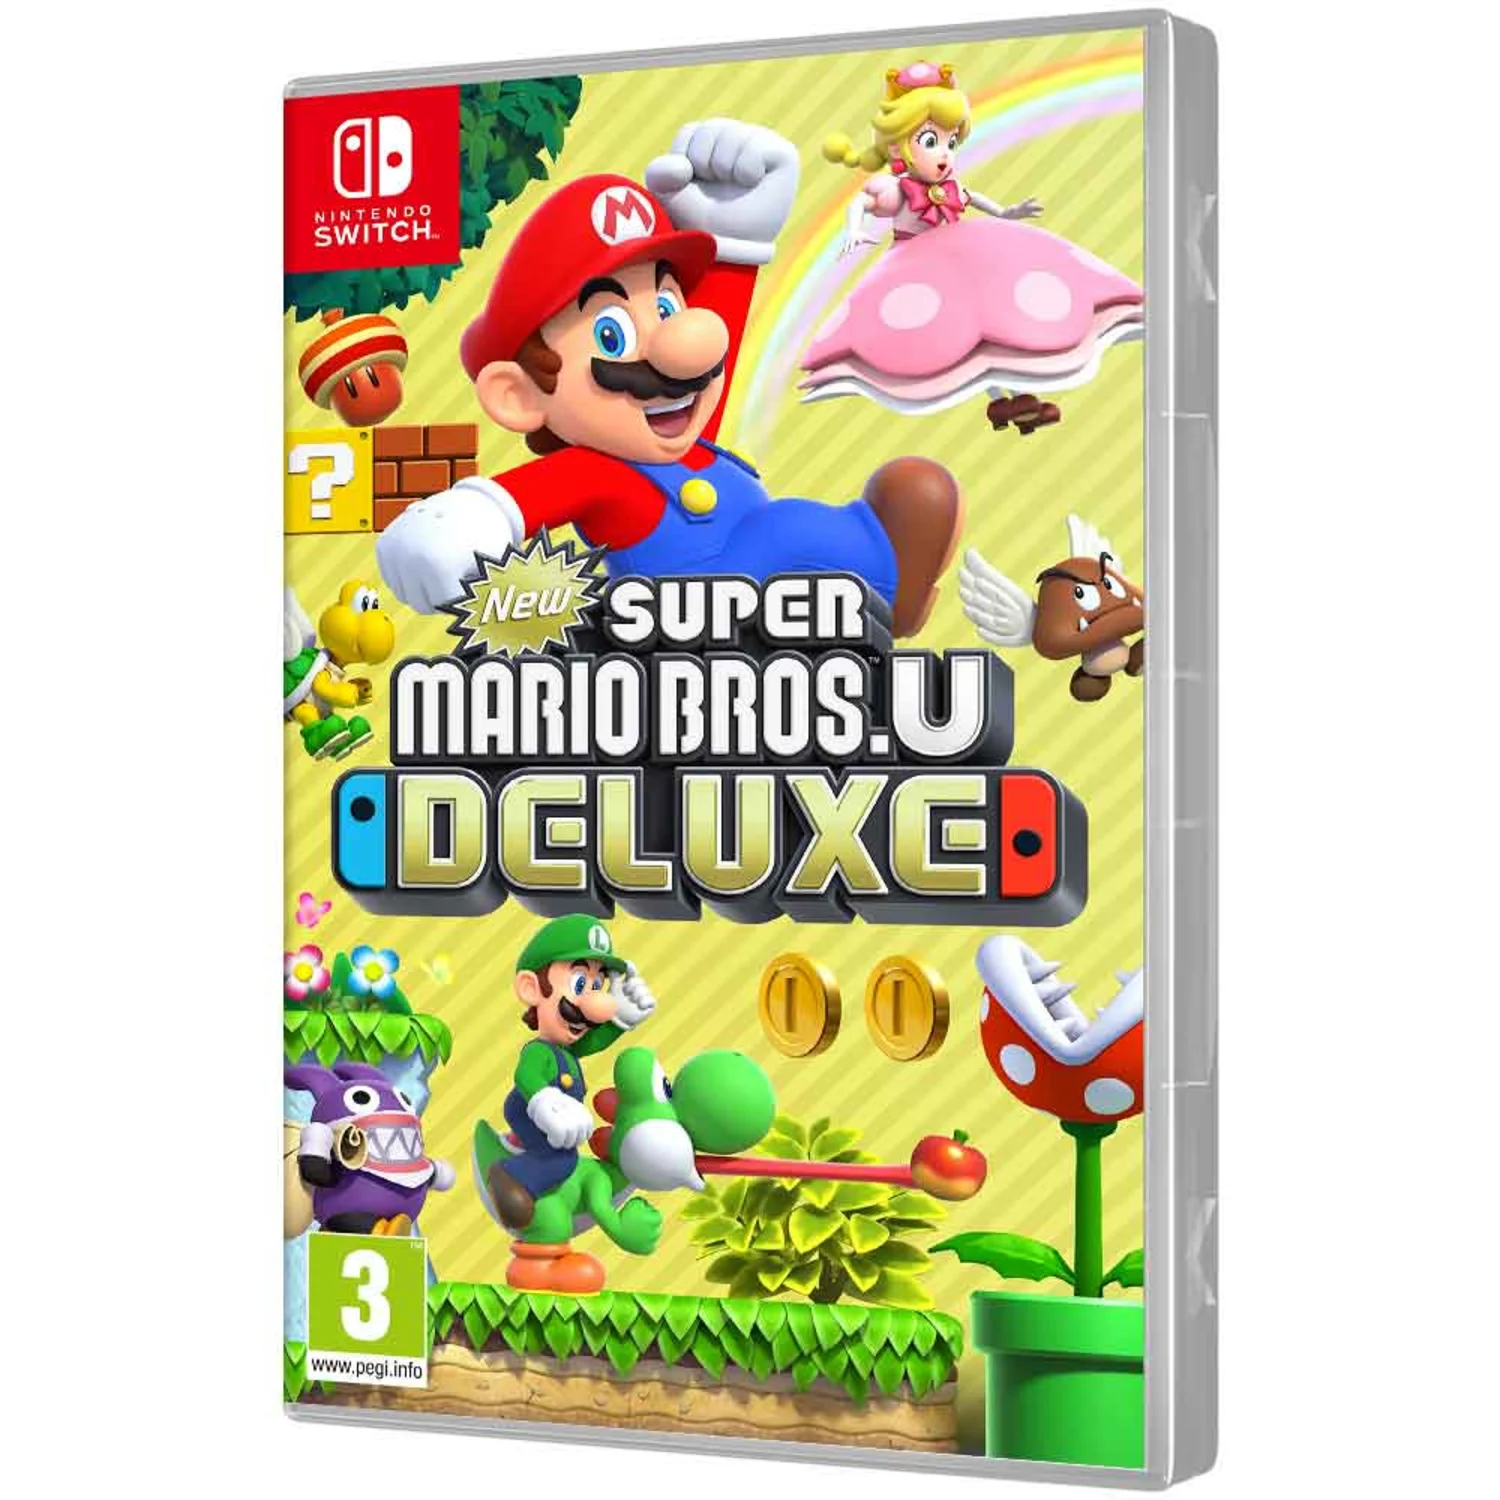 Jogo Super Mario Bros Wonder para Nintendo Switch no Paraguai